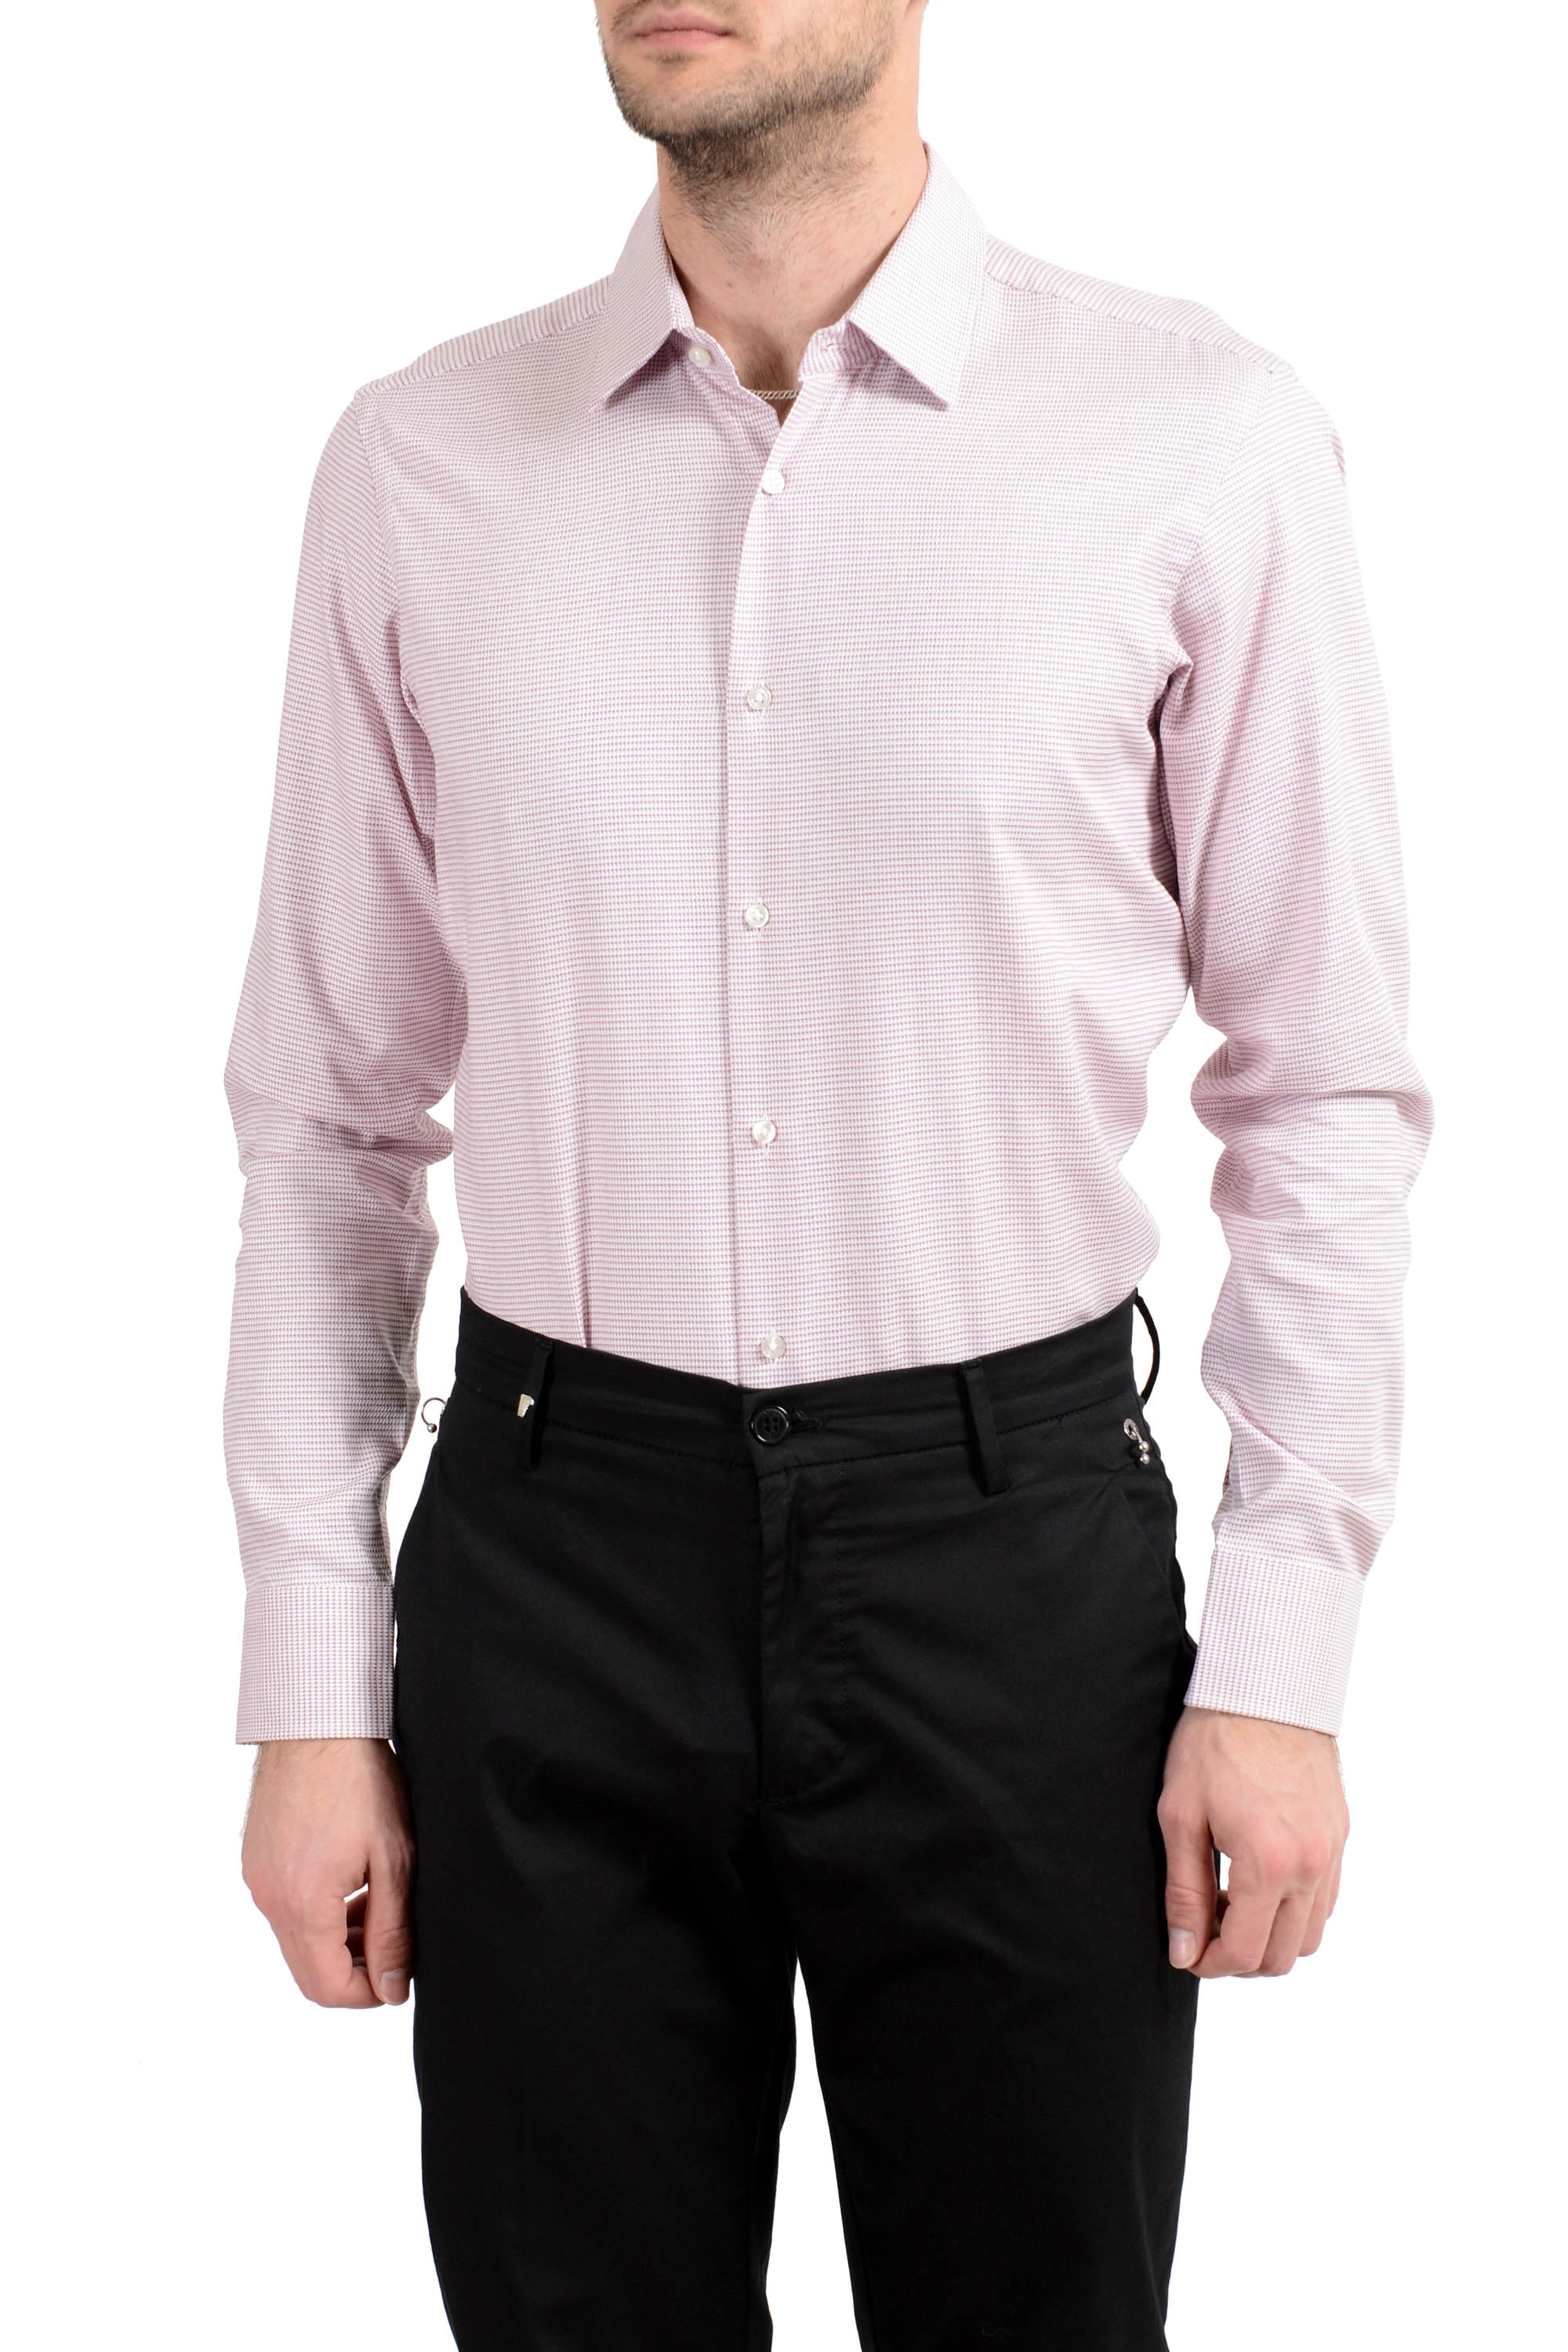 duisternis Verspreiding Het beste Hugo Boss "Enzo" Men's Regular Fit Long Sleeve Dress Shirt